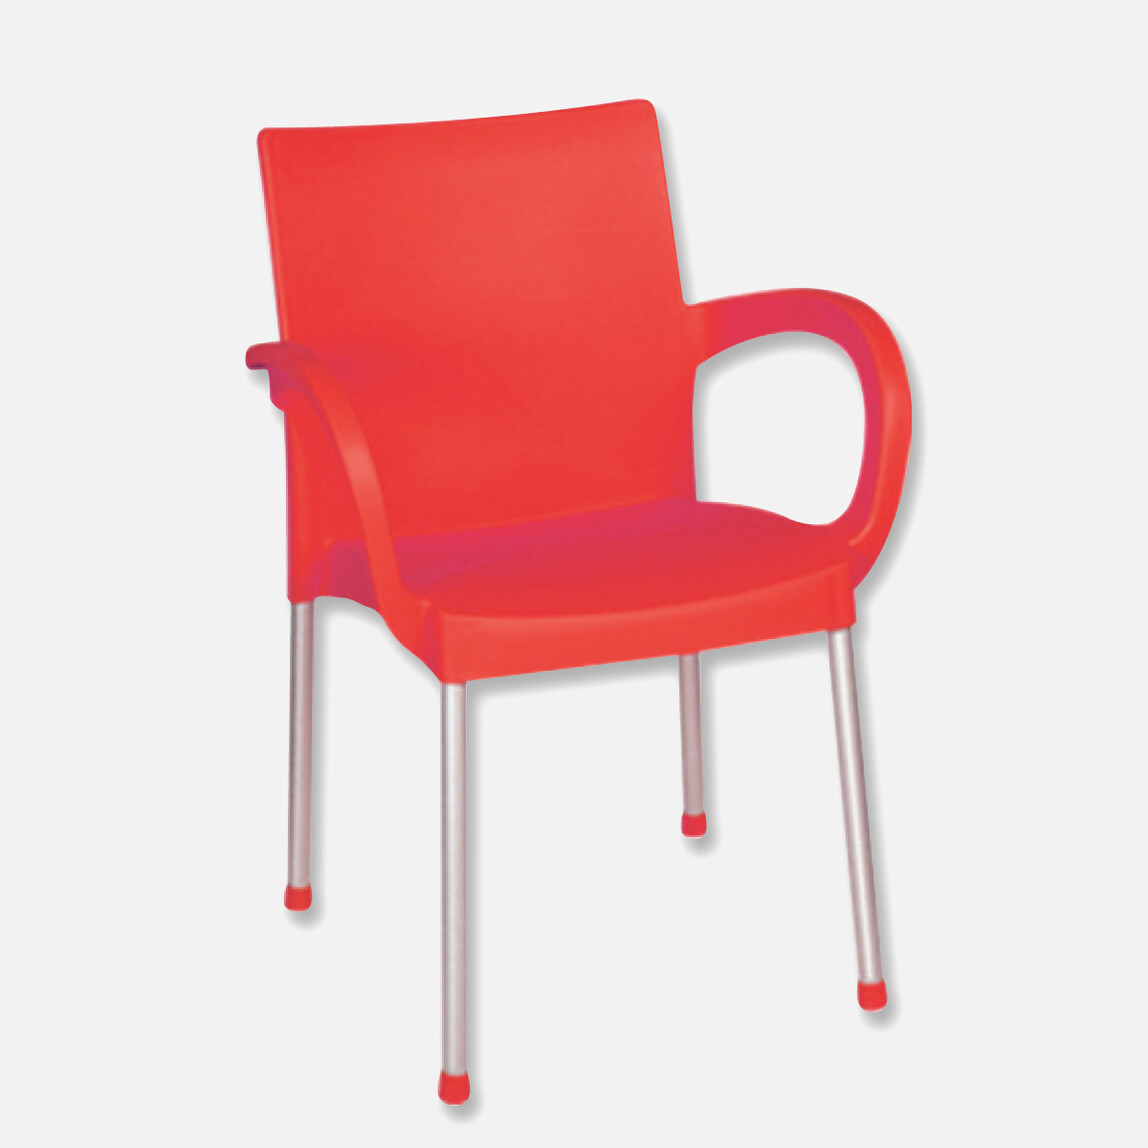 Holiday HK-420 Sümela Sandalye Kırmızı_0